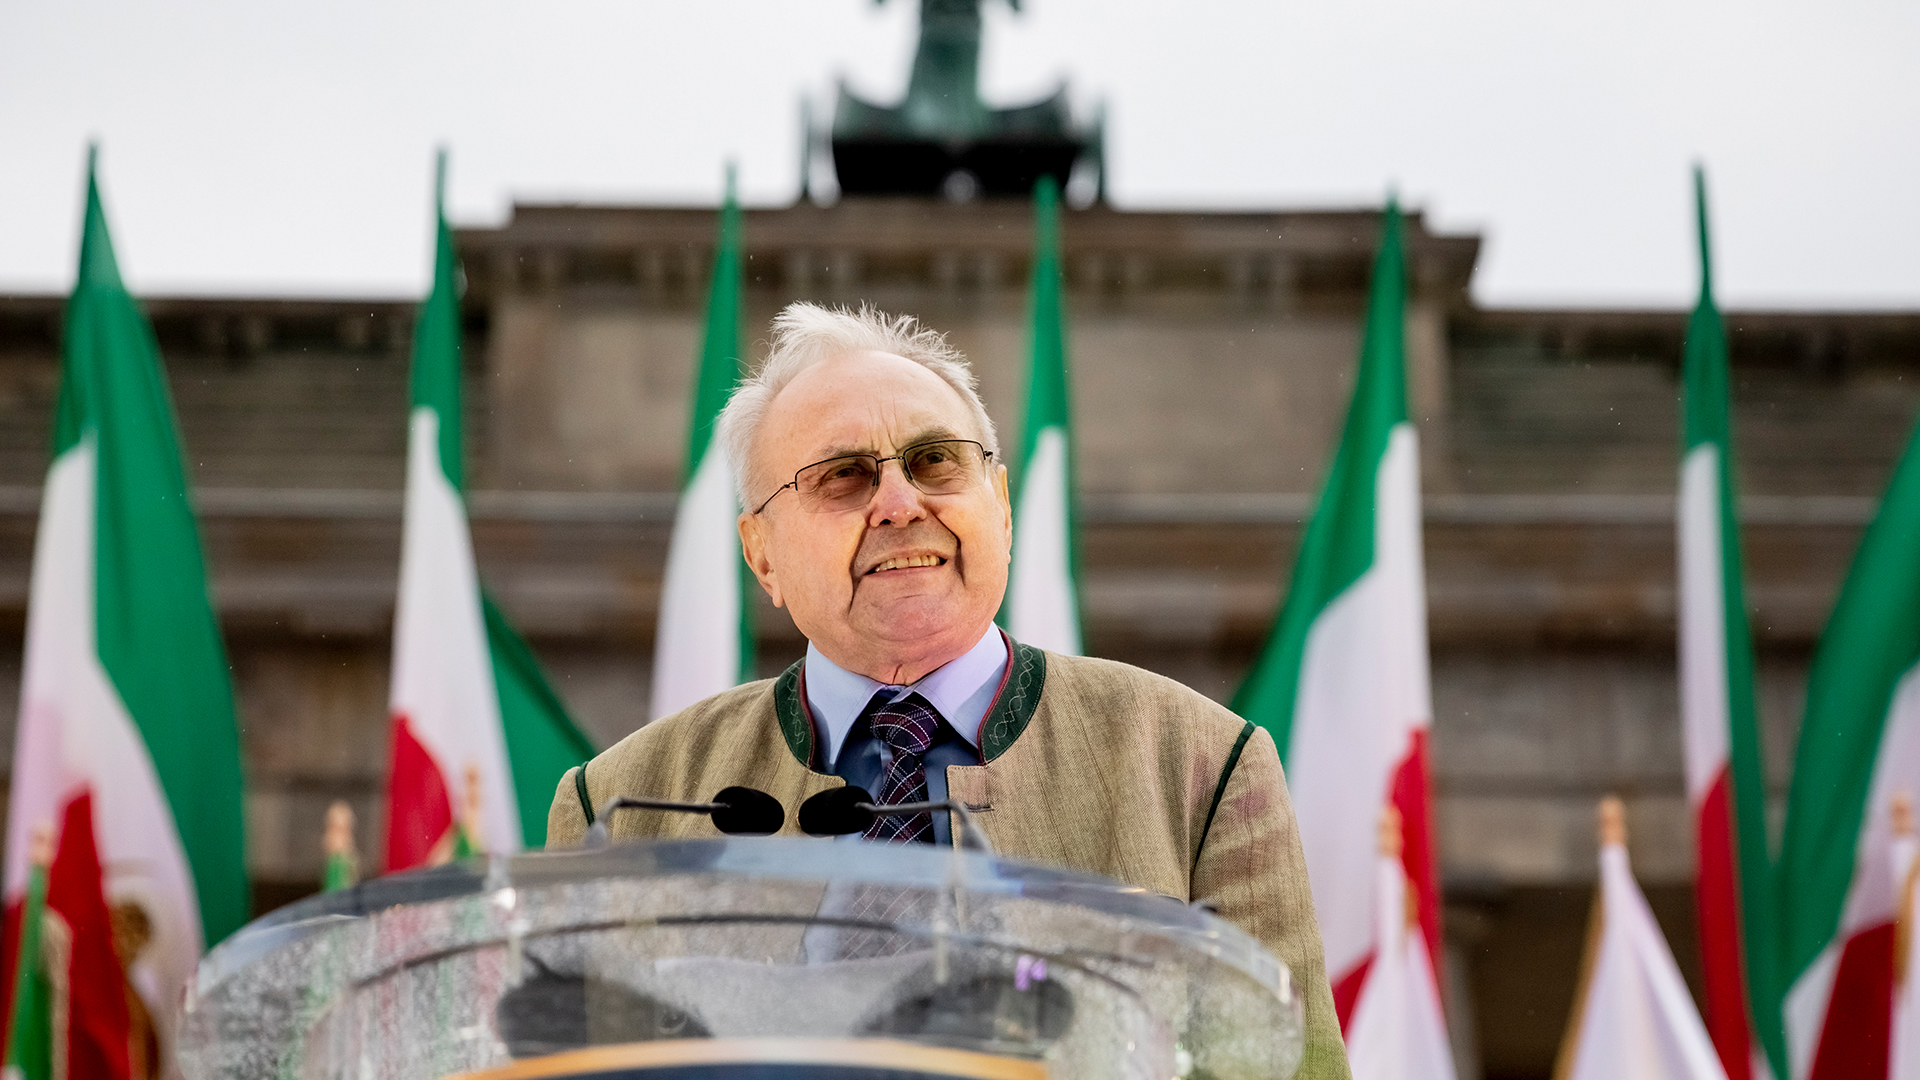 Eduard Lintner spricht vor dem Brandenburger Tor - davor iranische Flaggen | picture alliance/dpa